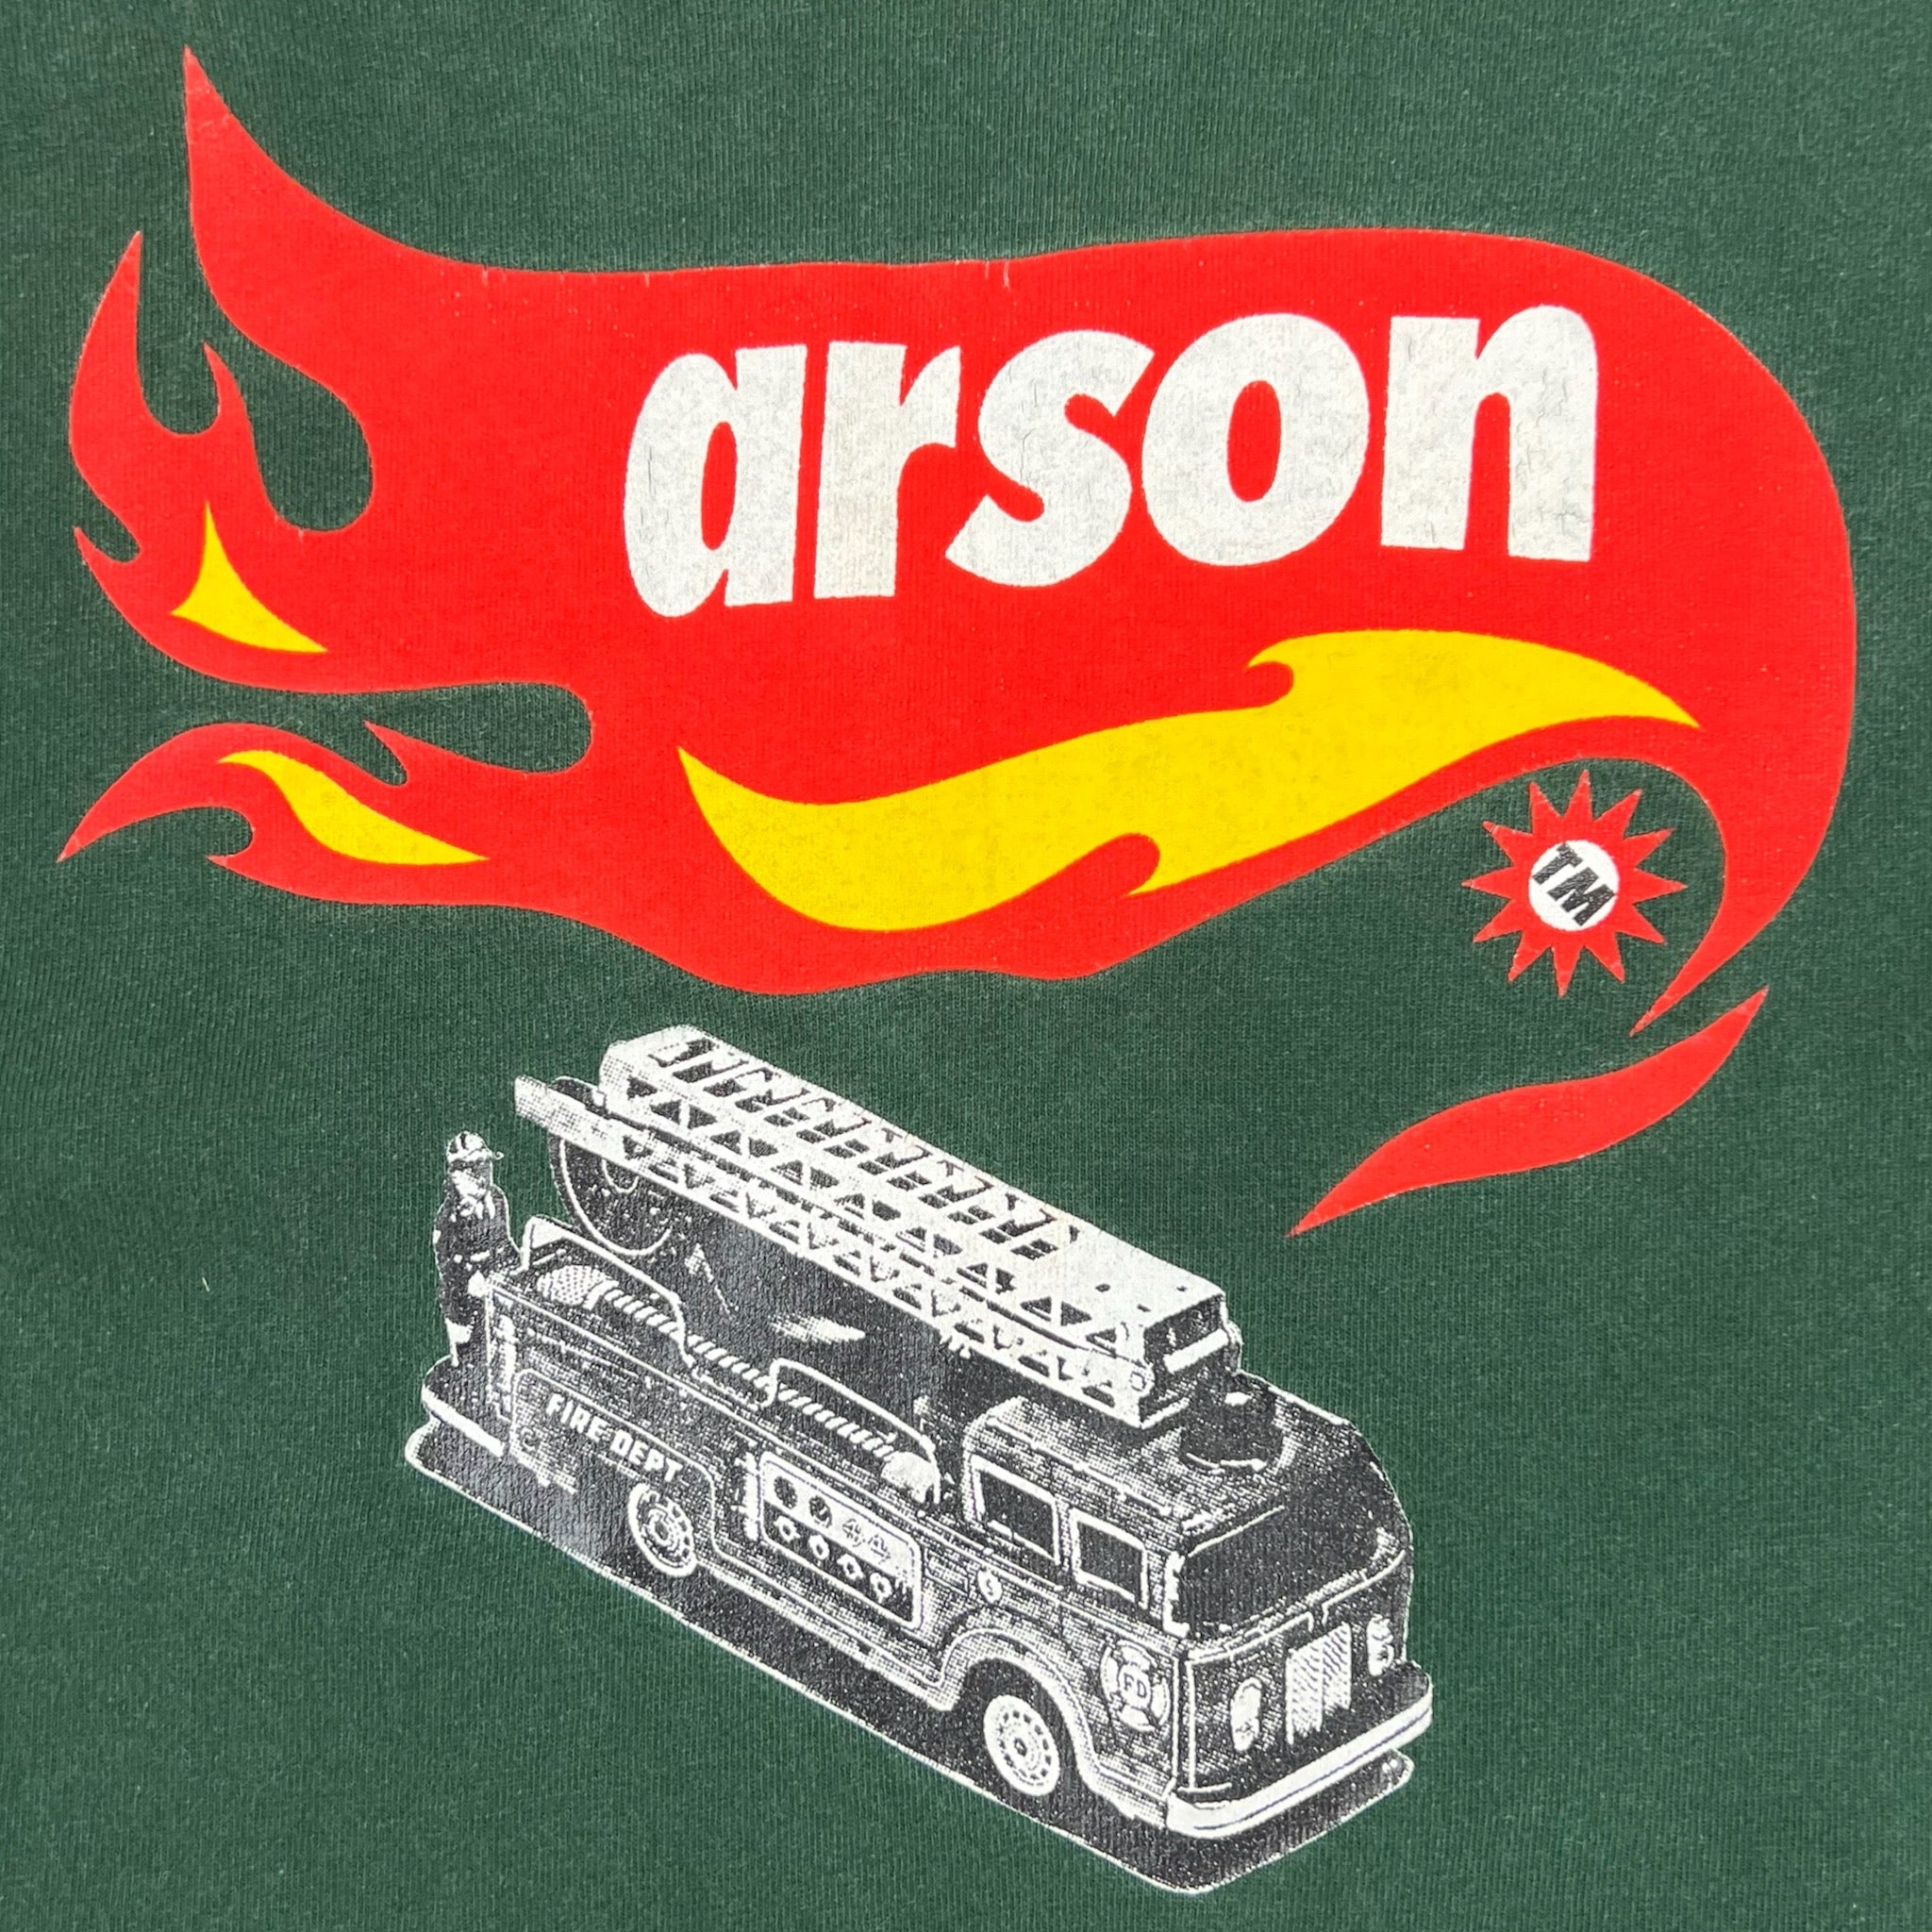 Vintage Arson Tour Tee